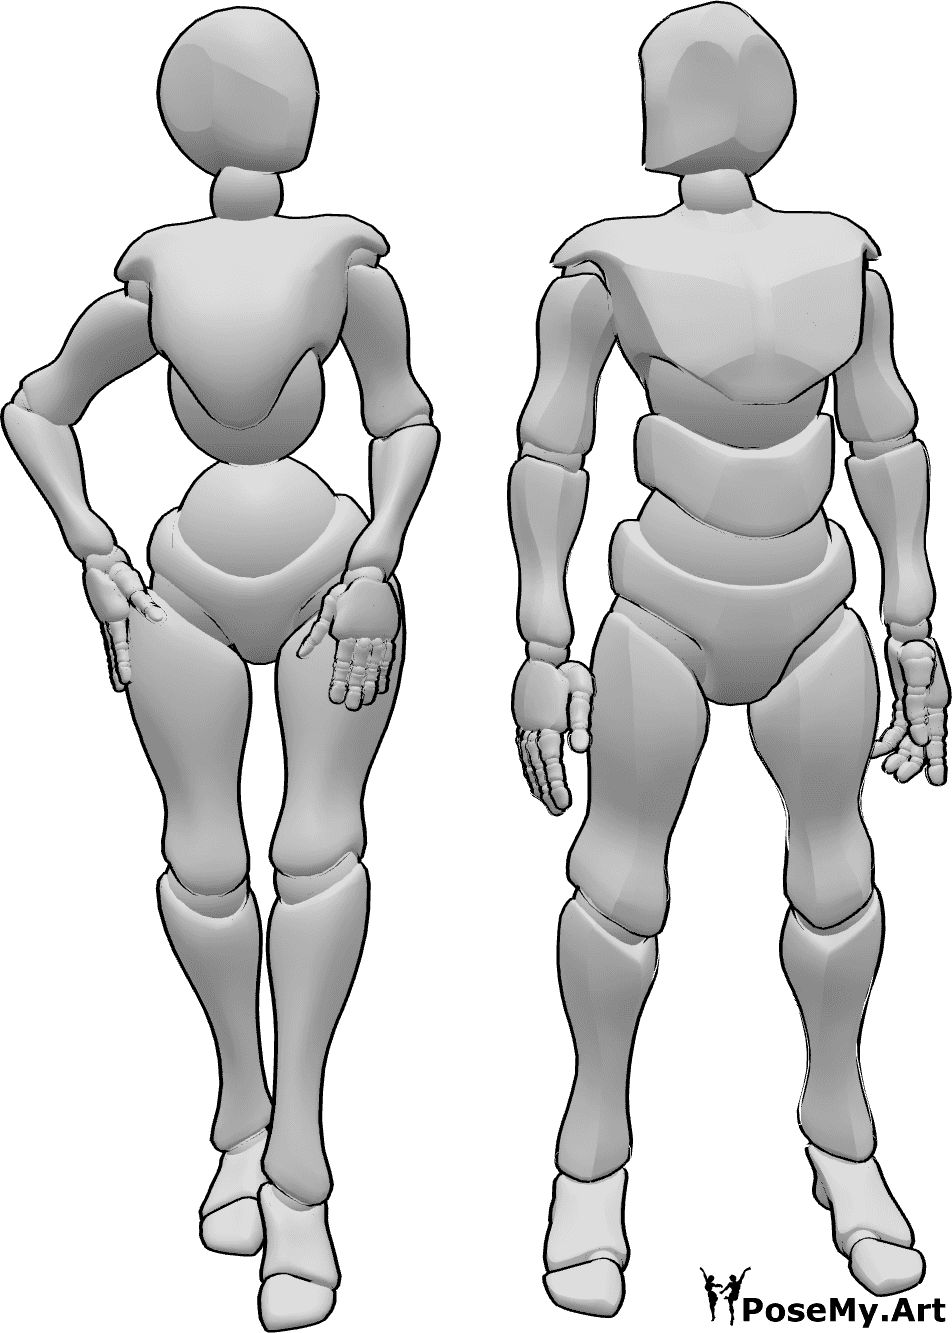 Referencia de poses- Hombre mujer pose de pie - Mujer y hombre posan uno al lado del otro